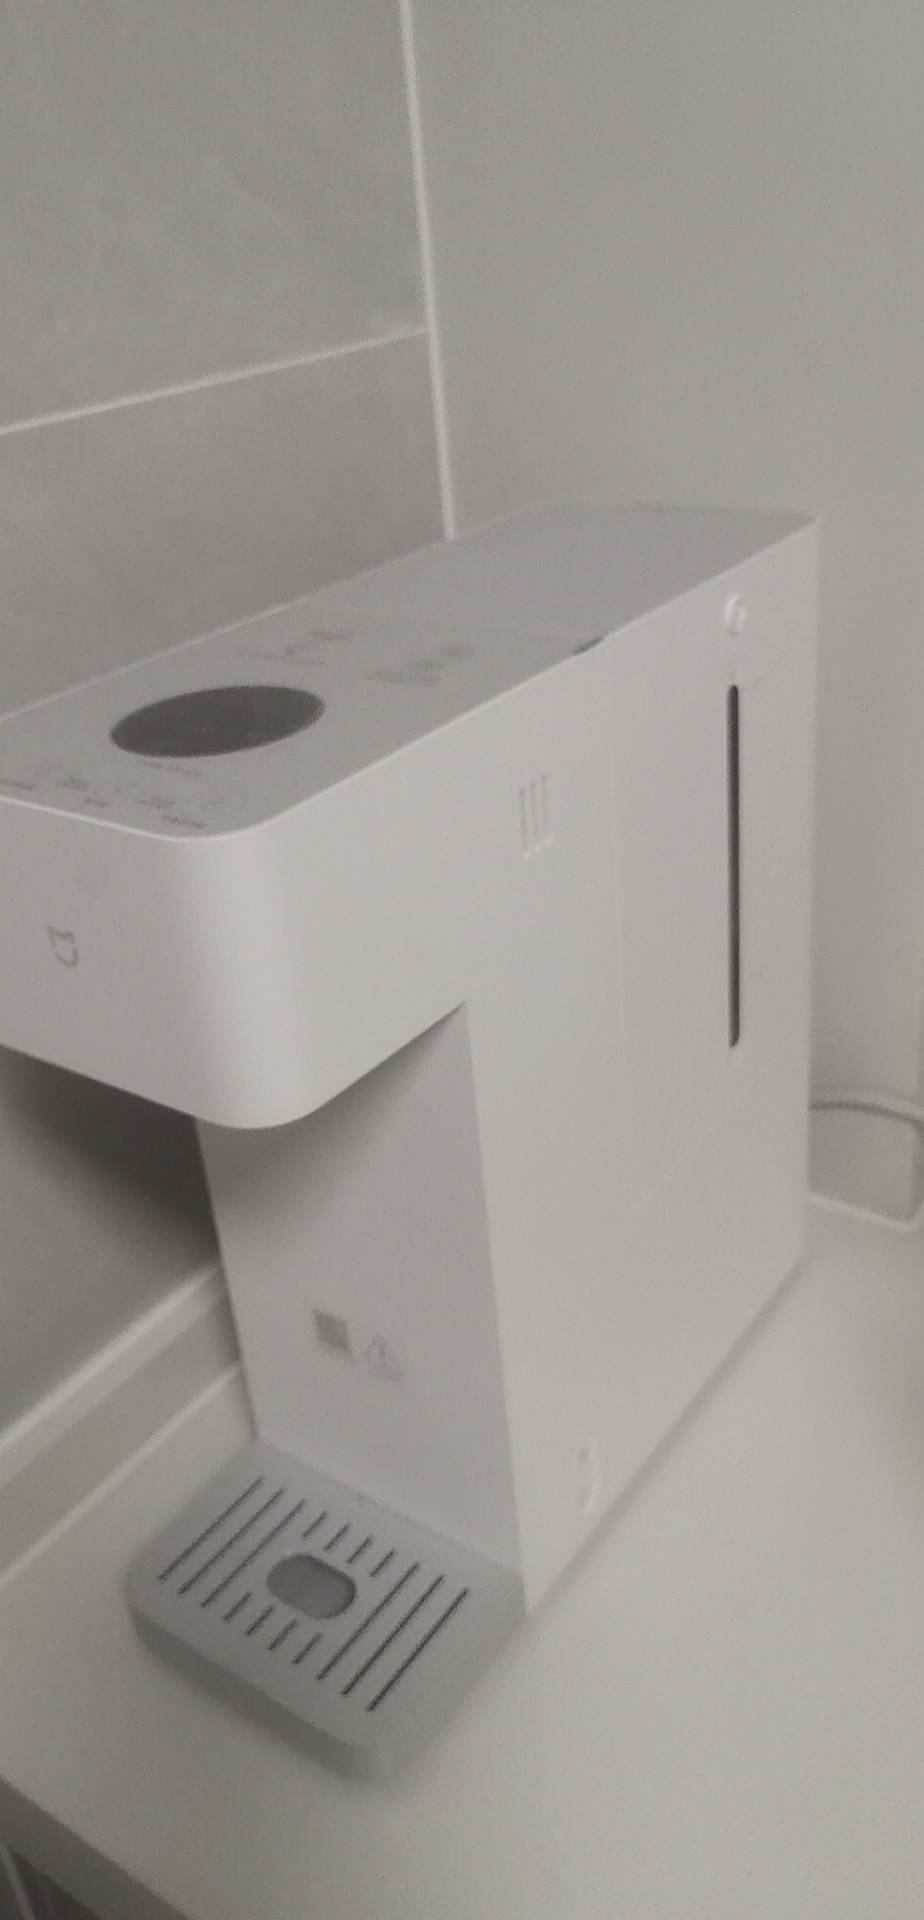 小米米家智能冷热饮水机家用小型桌面制冷即热饮水机直饮机一体机新品晒单图